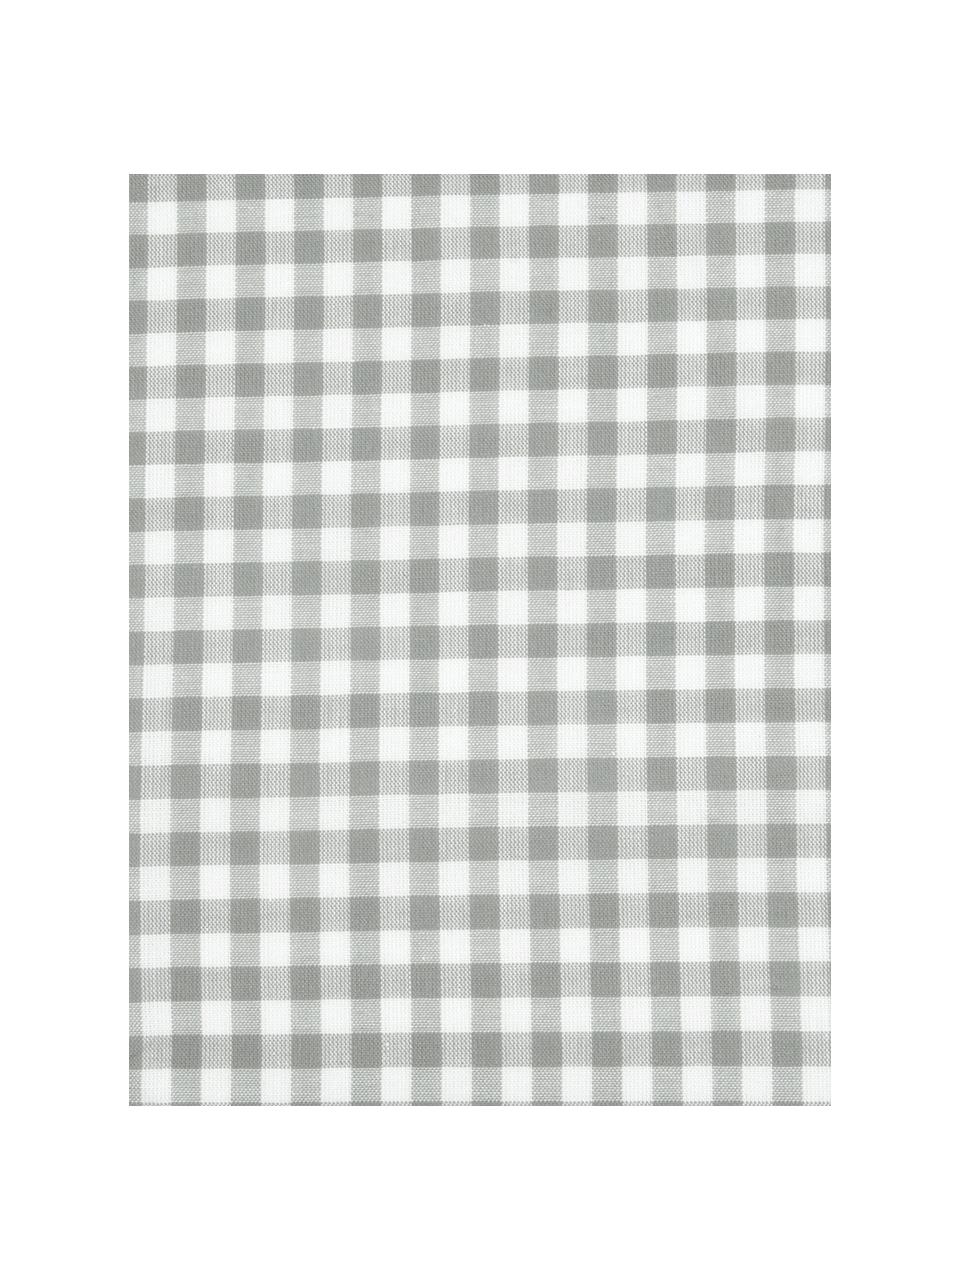 Taie d'oreiller 50x70 coton Scotty, 2 pièces, Coton, Gris clair/blanc, 50 x 70 cm